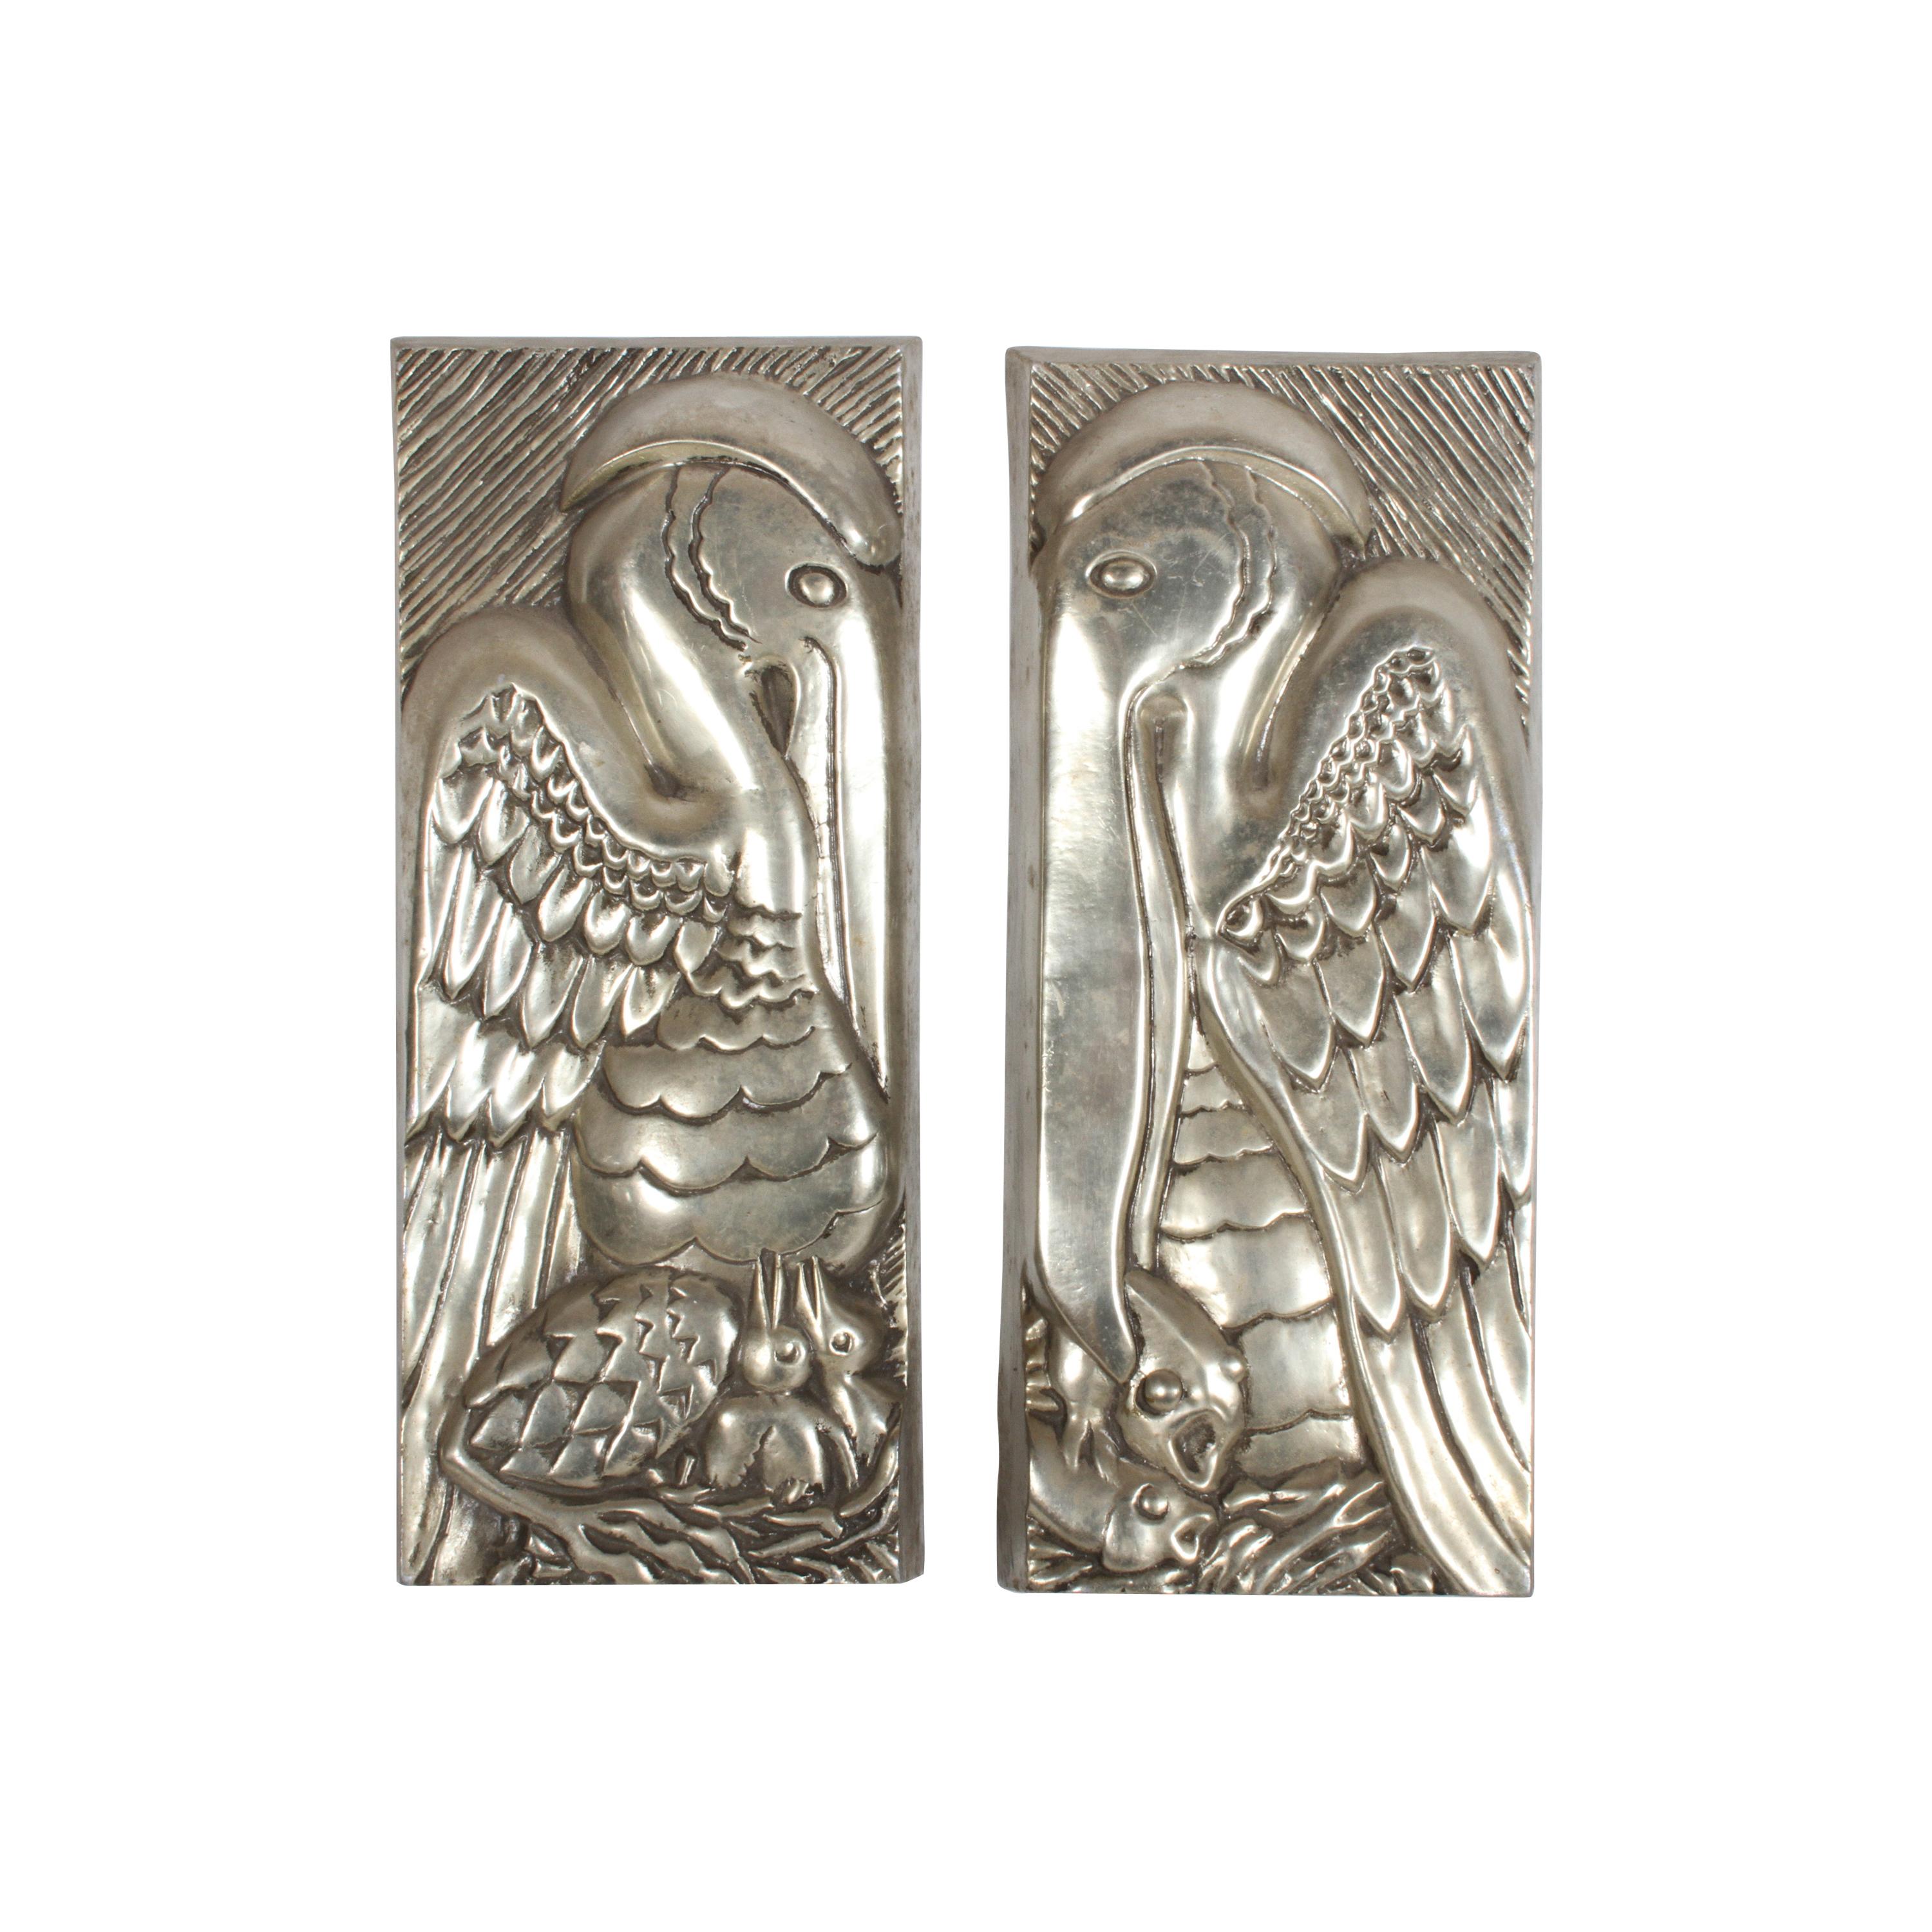 Rare Set of Bruce Cox Art Deco Aluminum Pelican Sculptural Panels